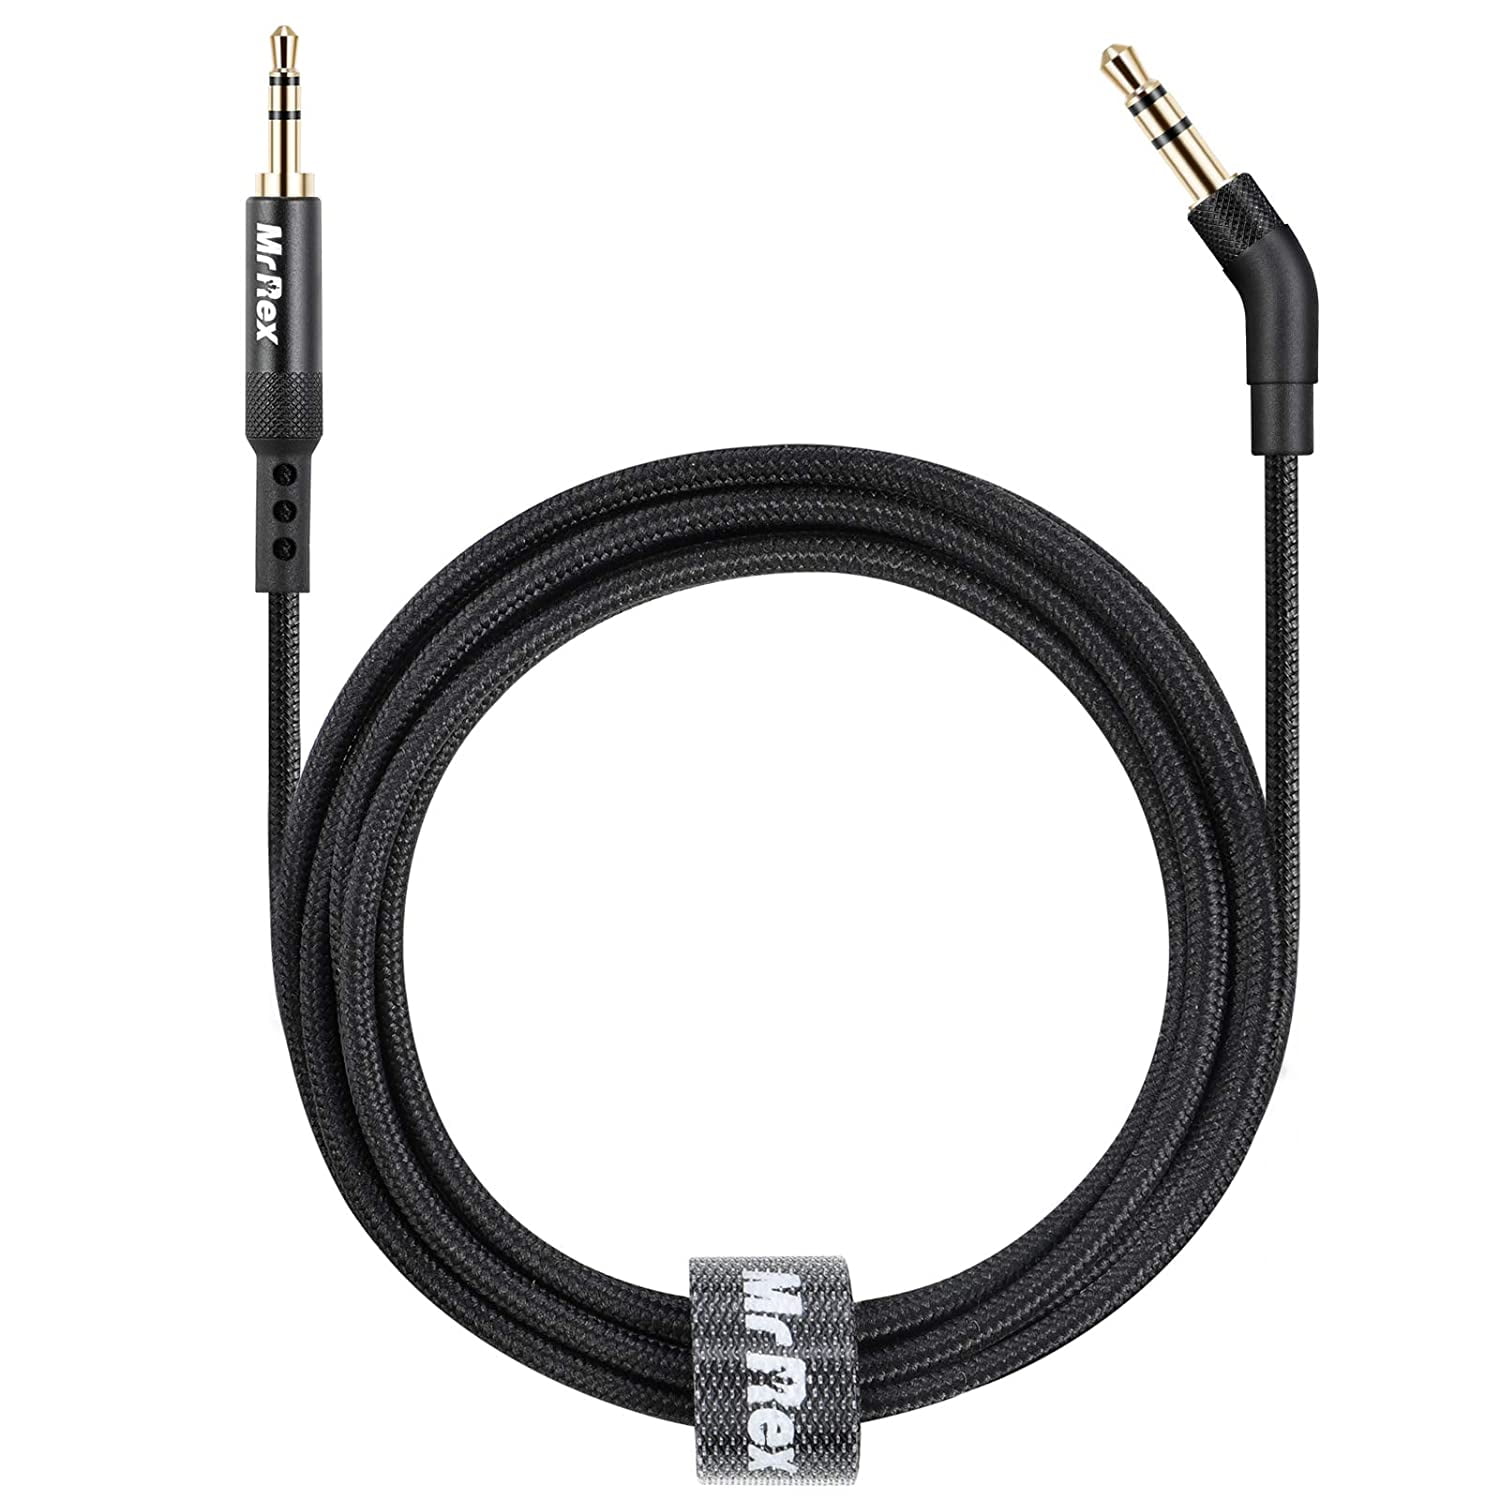 2.5mm to 3.5mm Audio Aux Cable for Bose 700 QC45 QC35II QC35 QC25 Headphones, JBL E45BT E55BT - Walmart.com